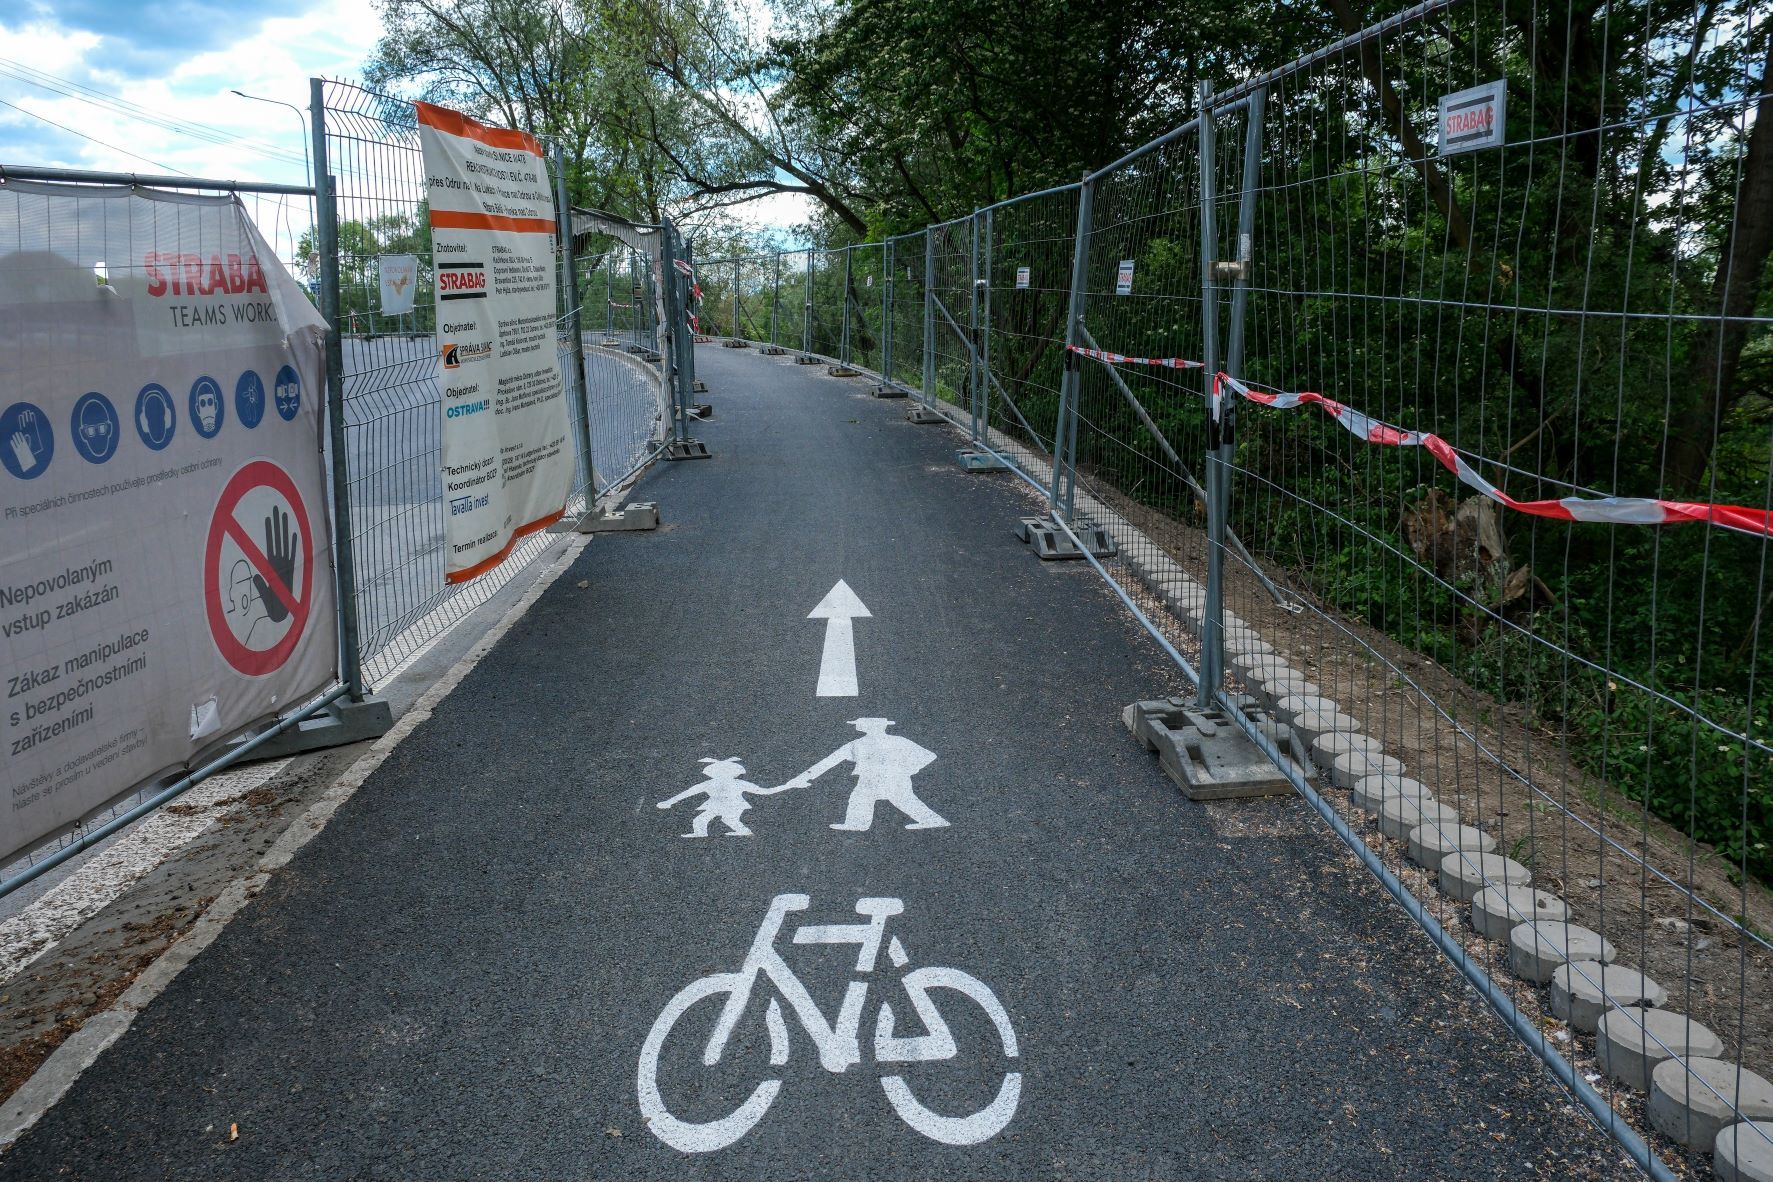 Nová cyklostezka na mostě přes Odru mezi Polankou a Starou Bělou, foto týden před otevřením. Foto: Adolf Horsinka / Ostrava